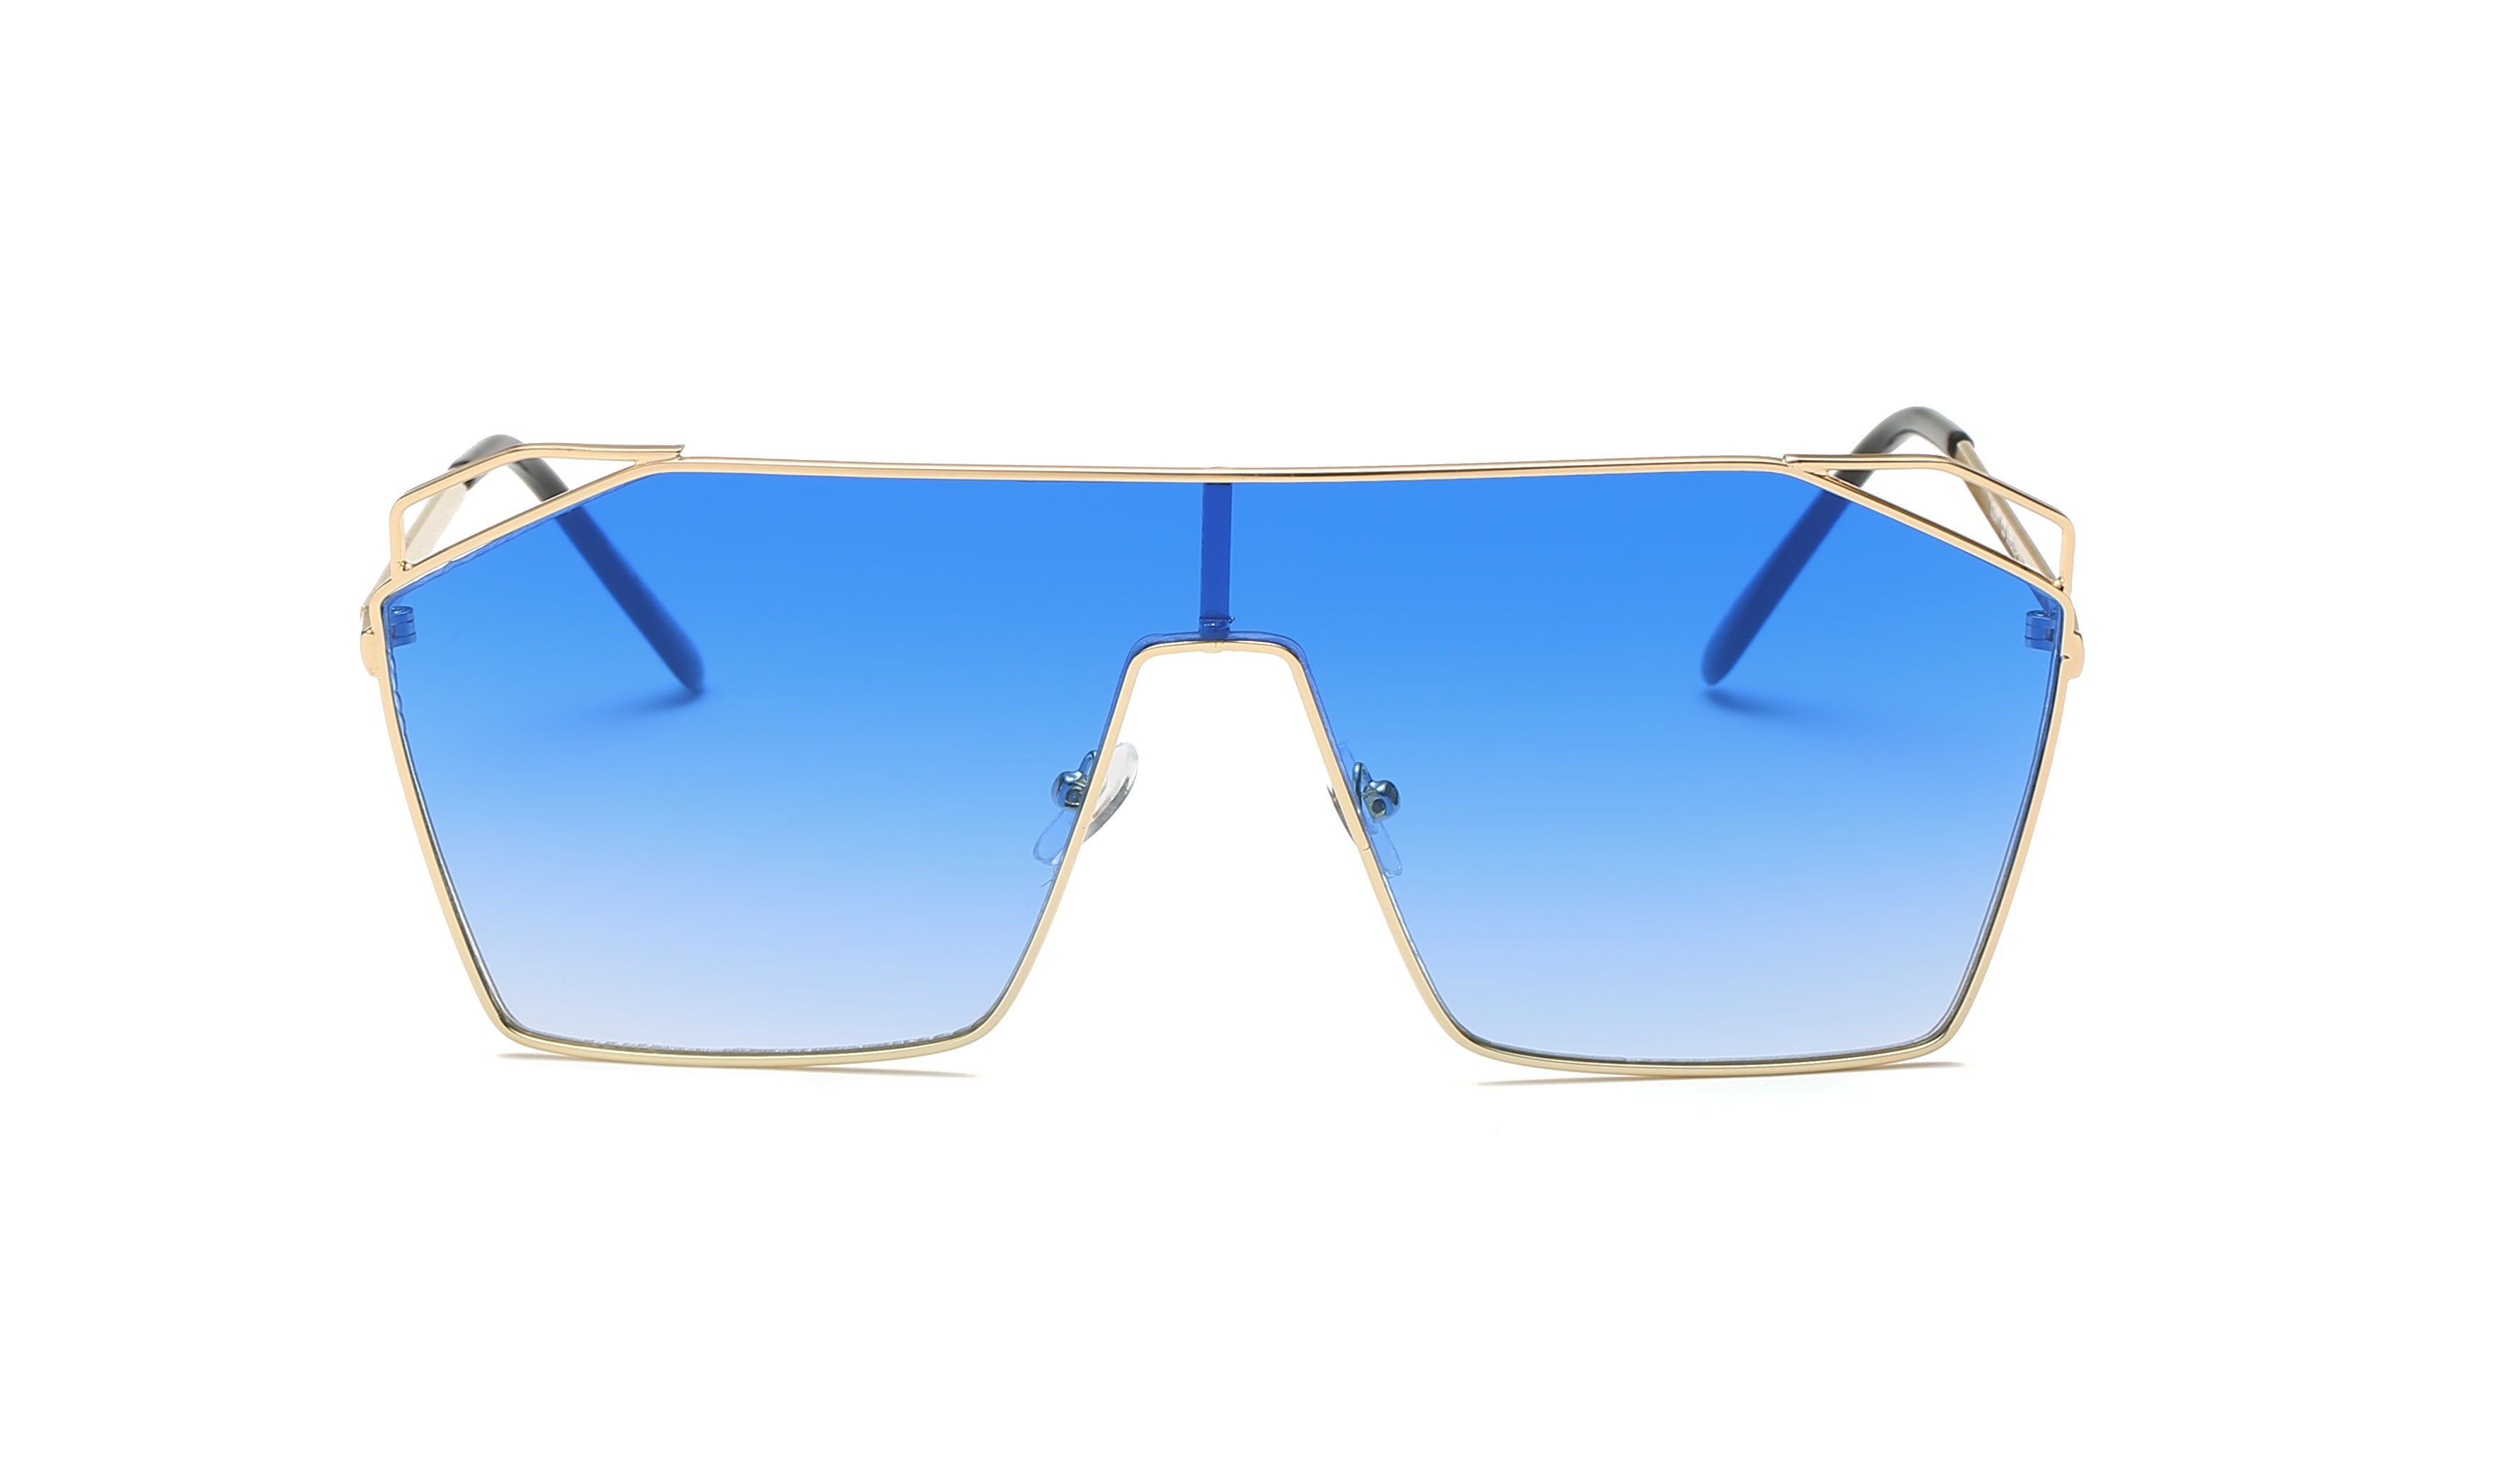 Eyewear: Square Blue Light Glasses, acetate, metal & calfskin — Fashion